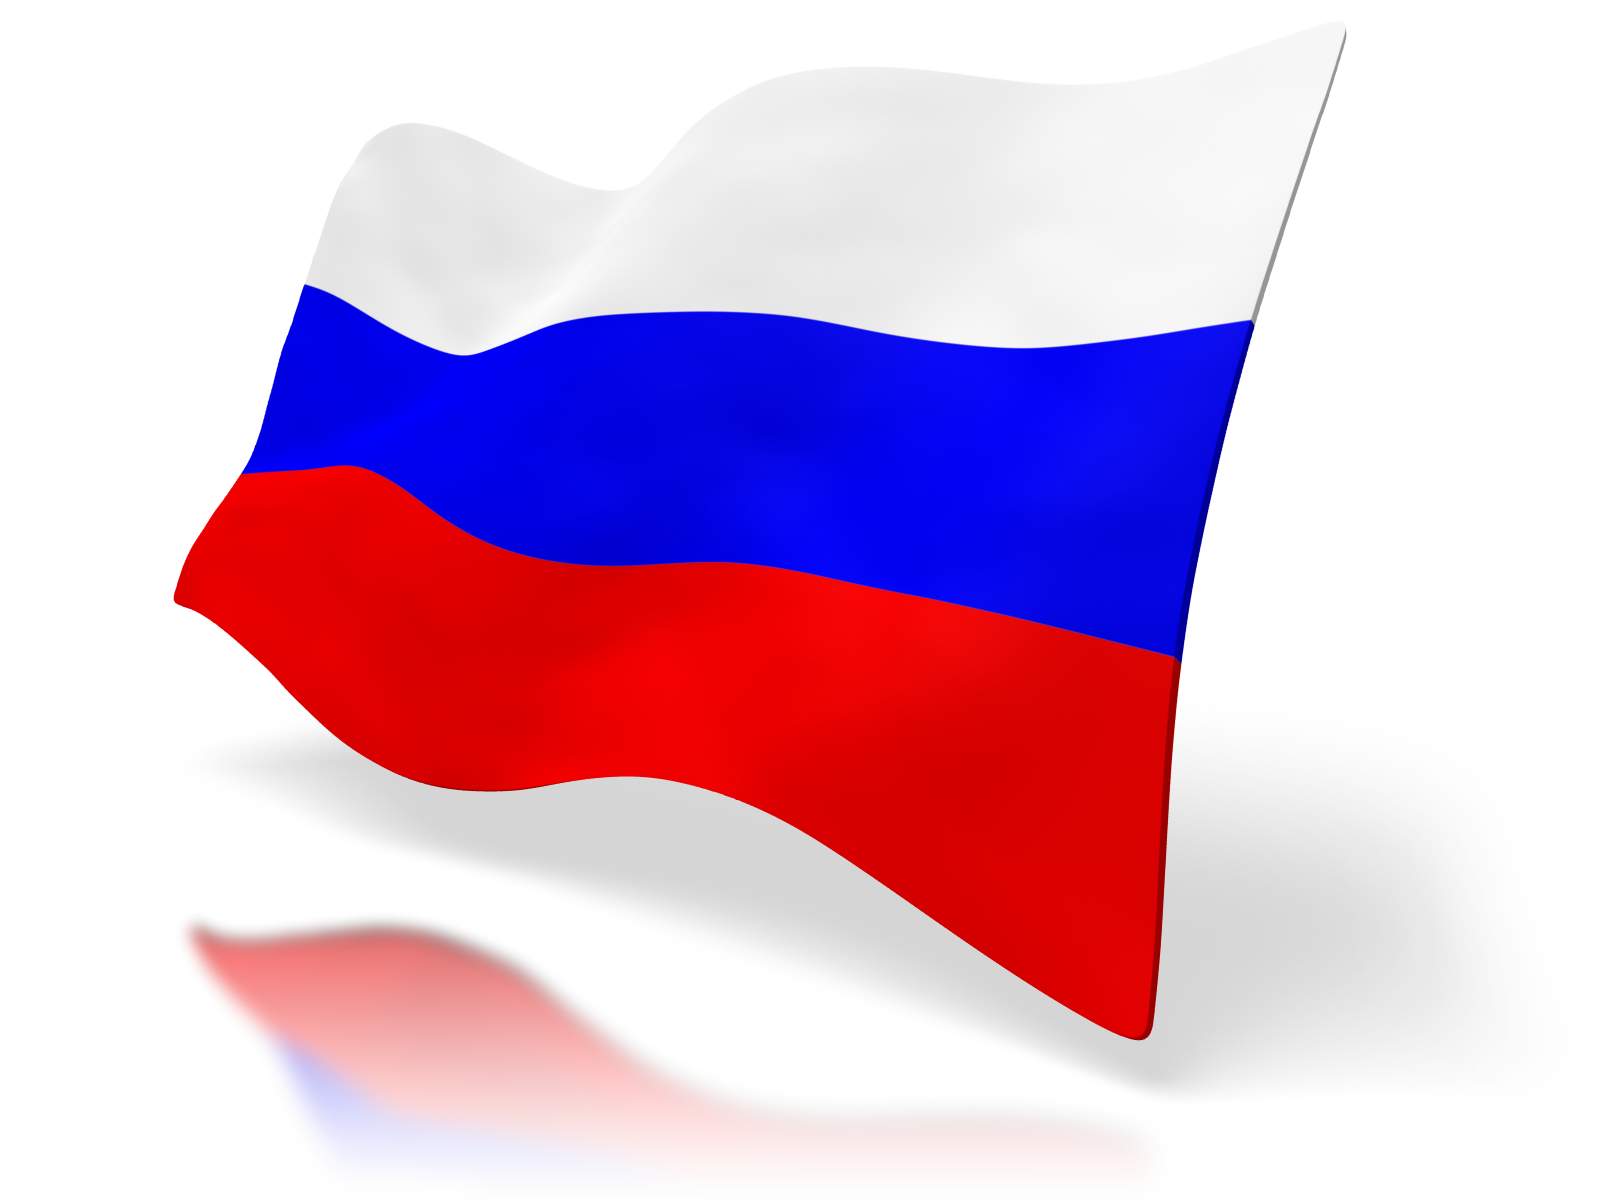 صورة روسيا علم PNG